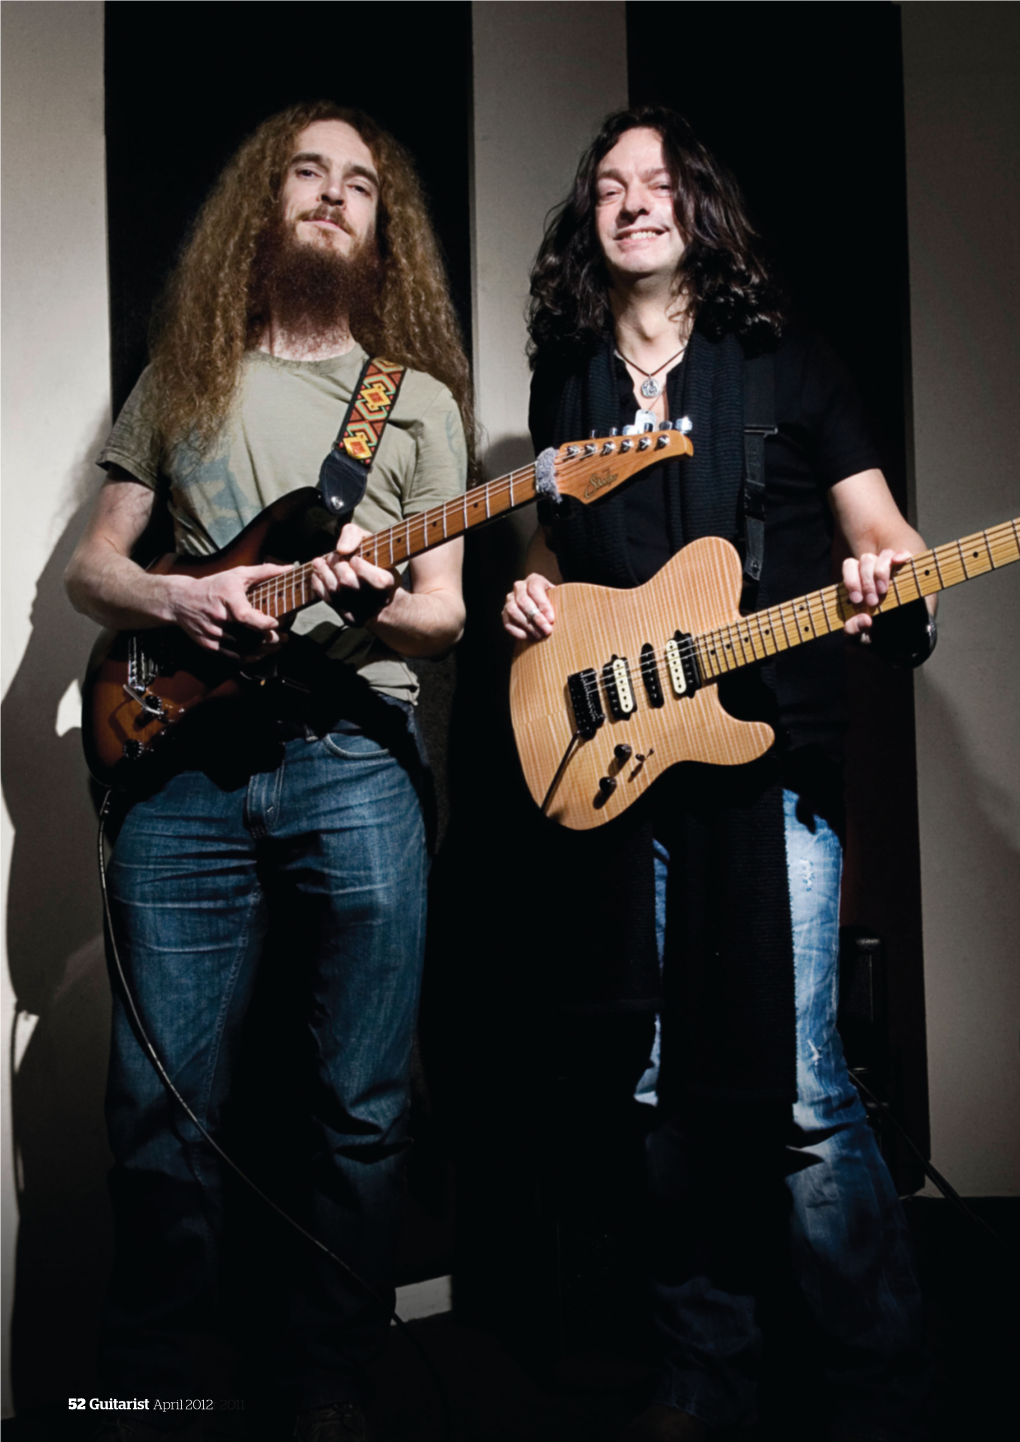 52 Guitarist April 2012